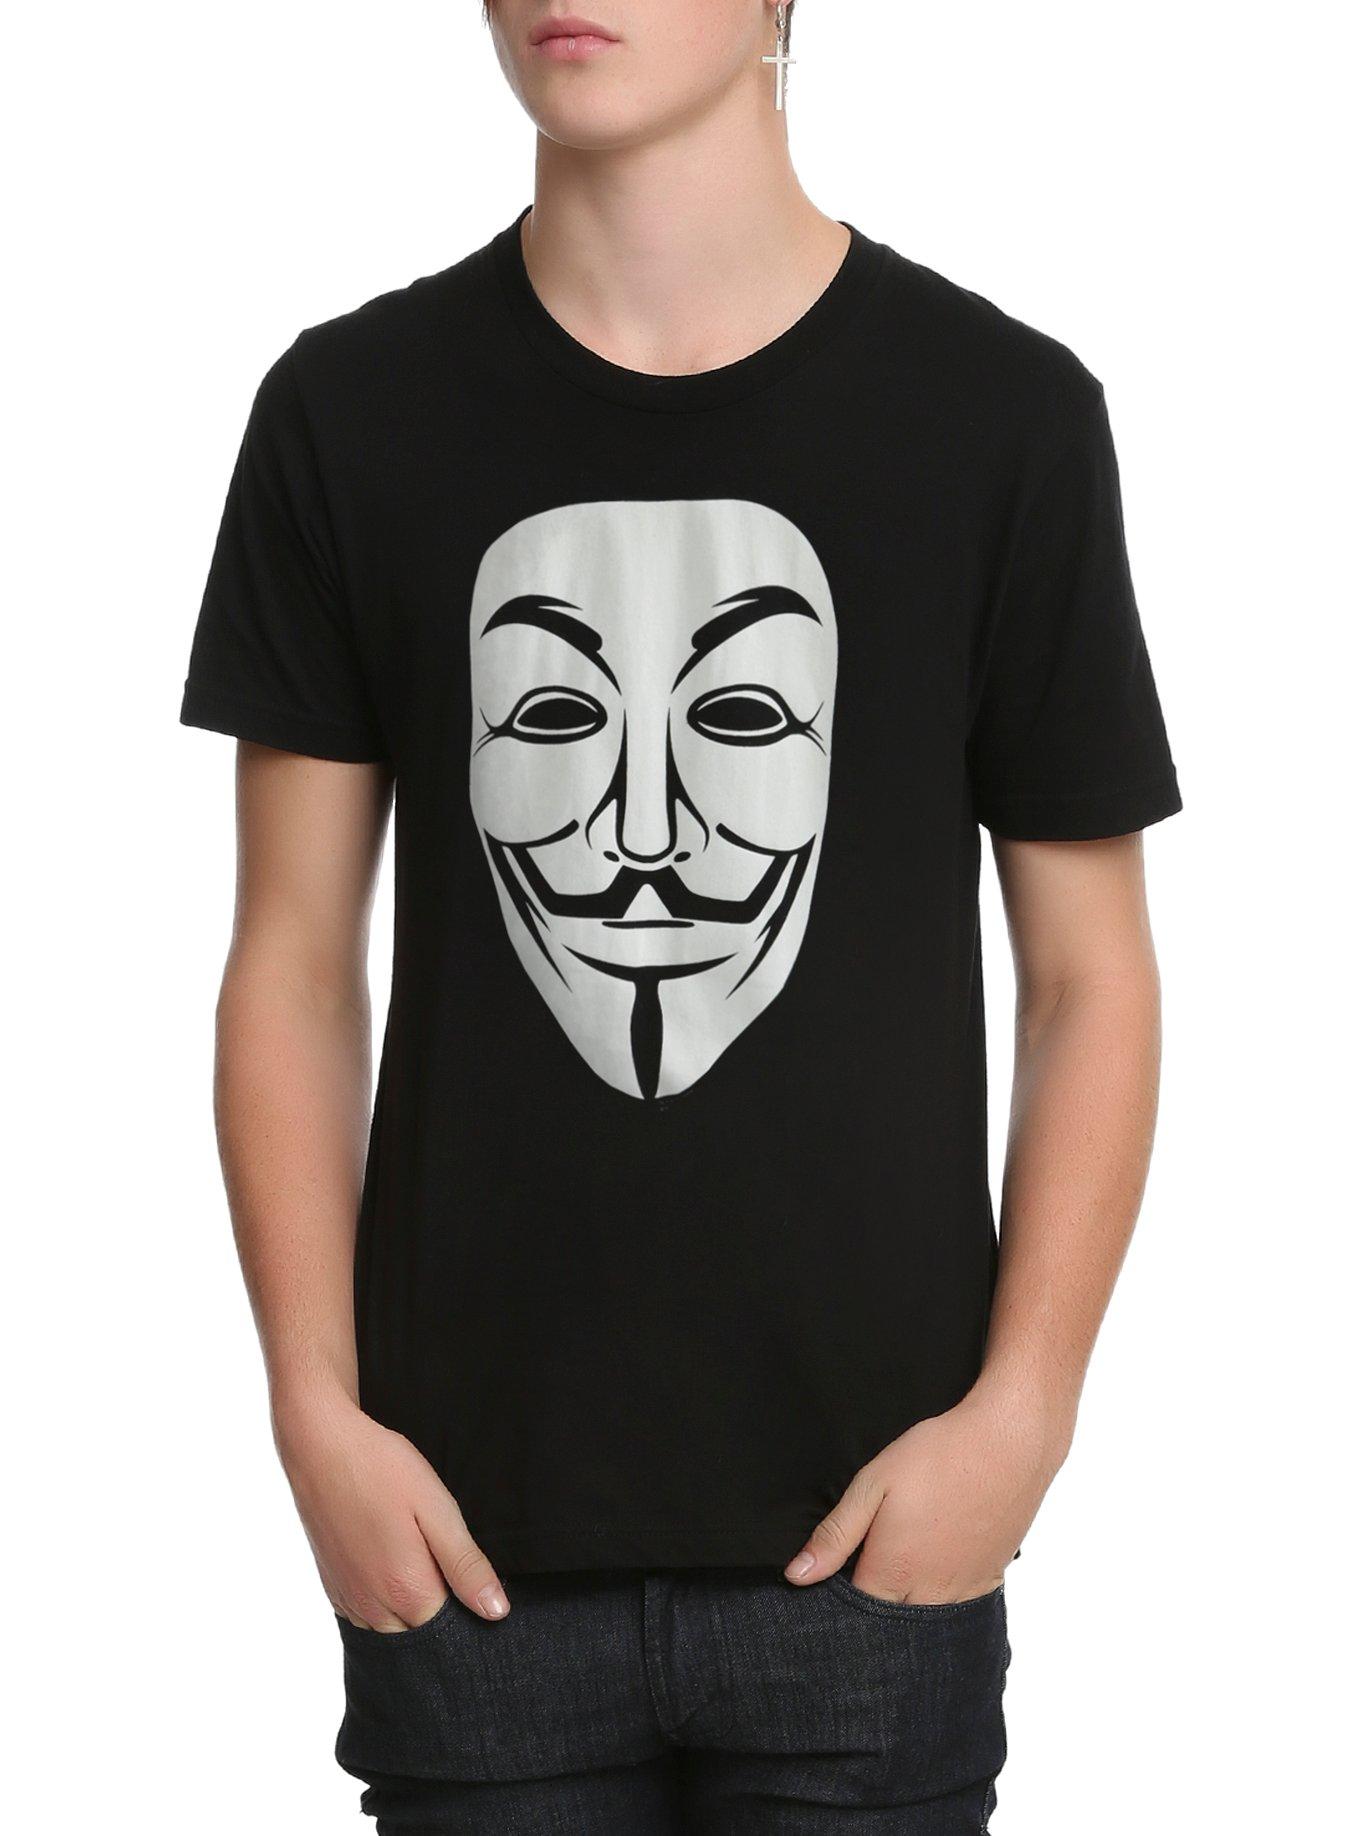 V For Vendetta Guy Fawkes Mask T-Shirt, BLACK, hi-res